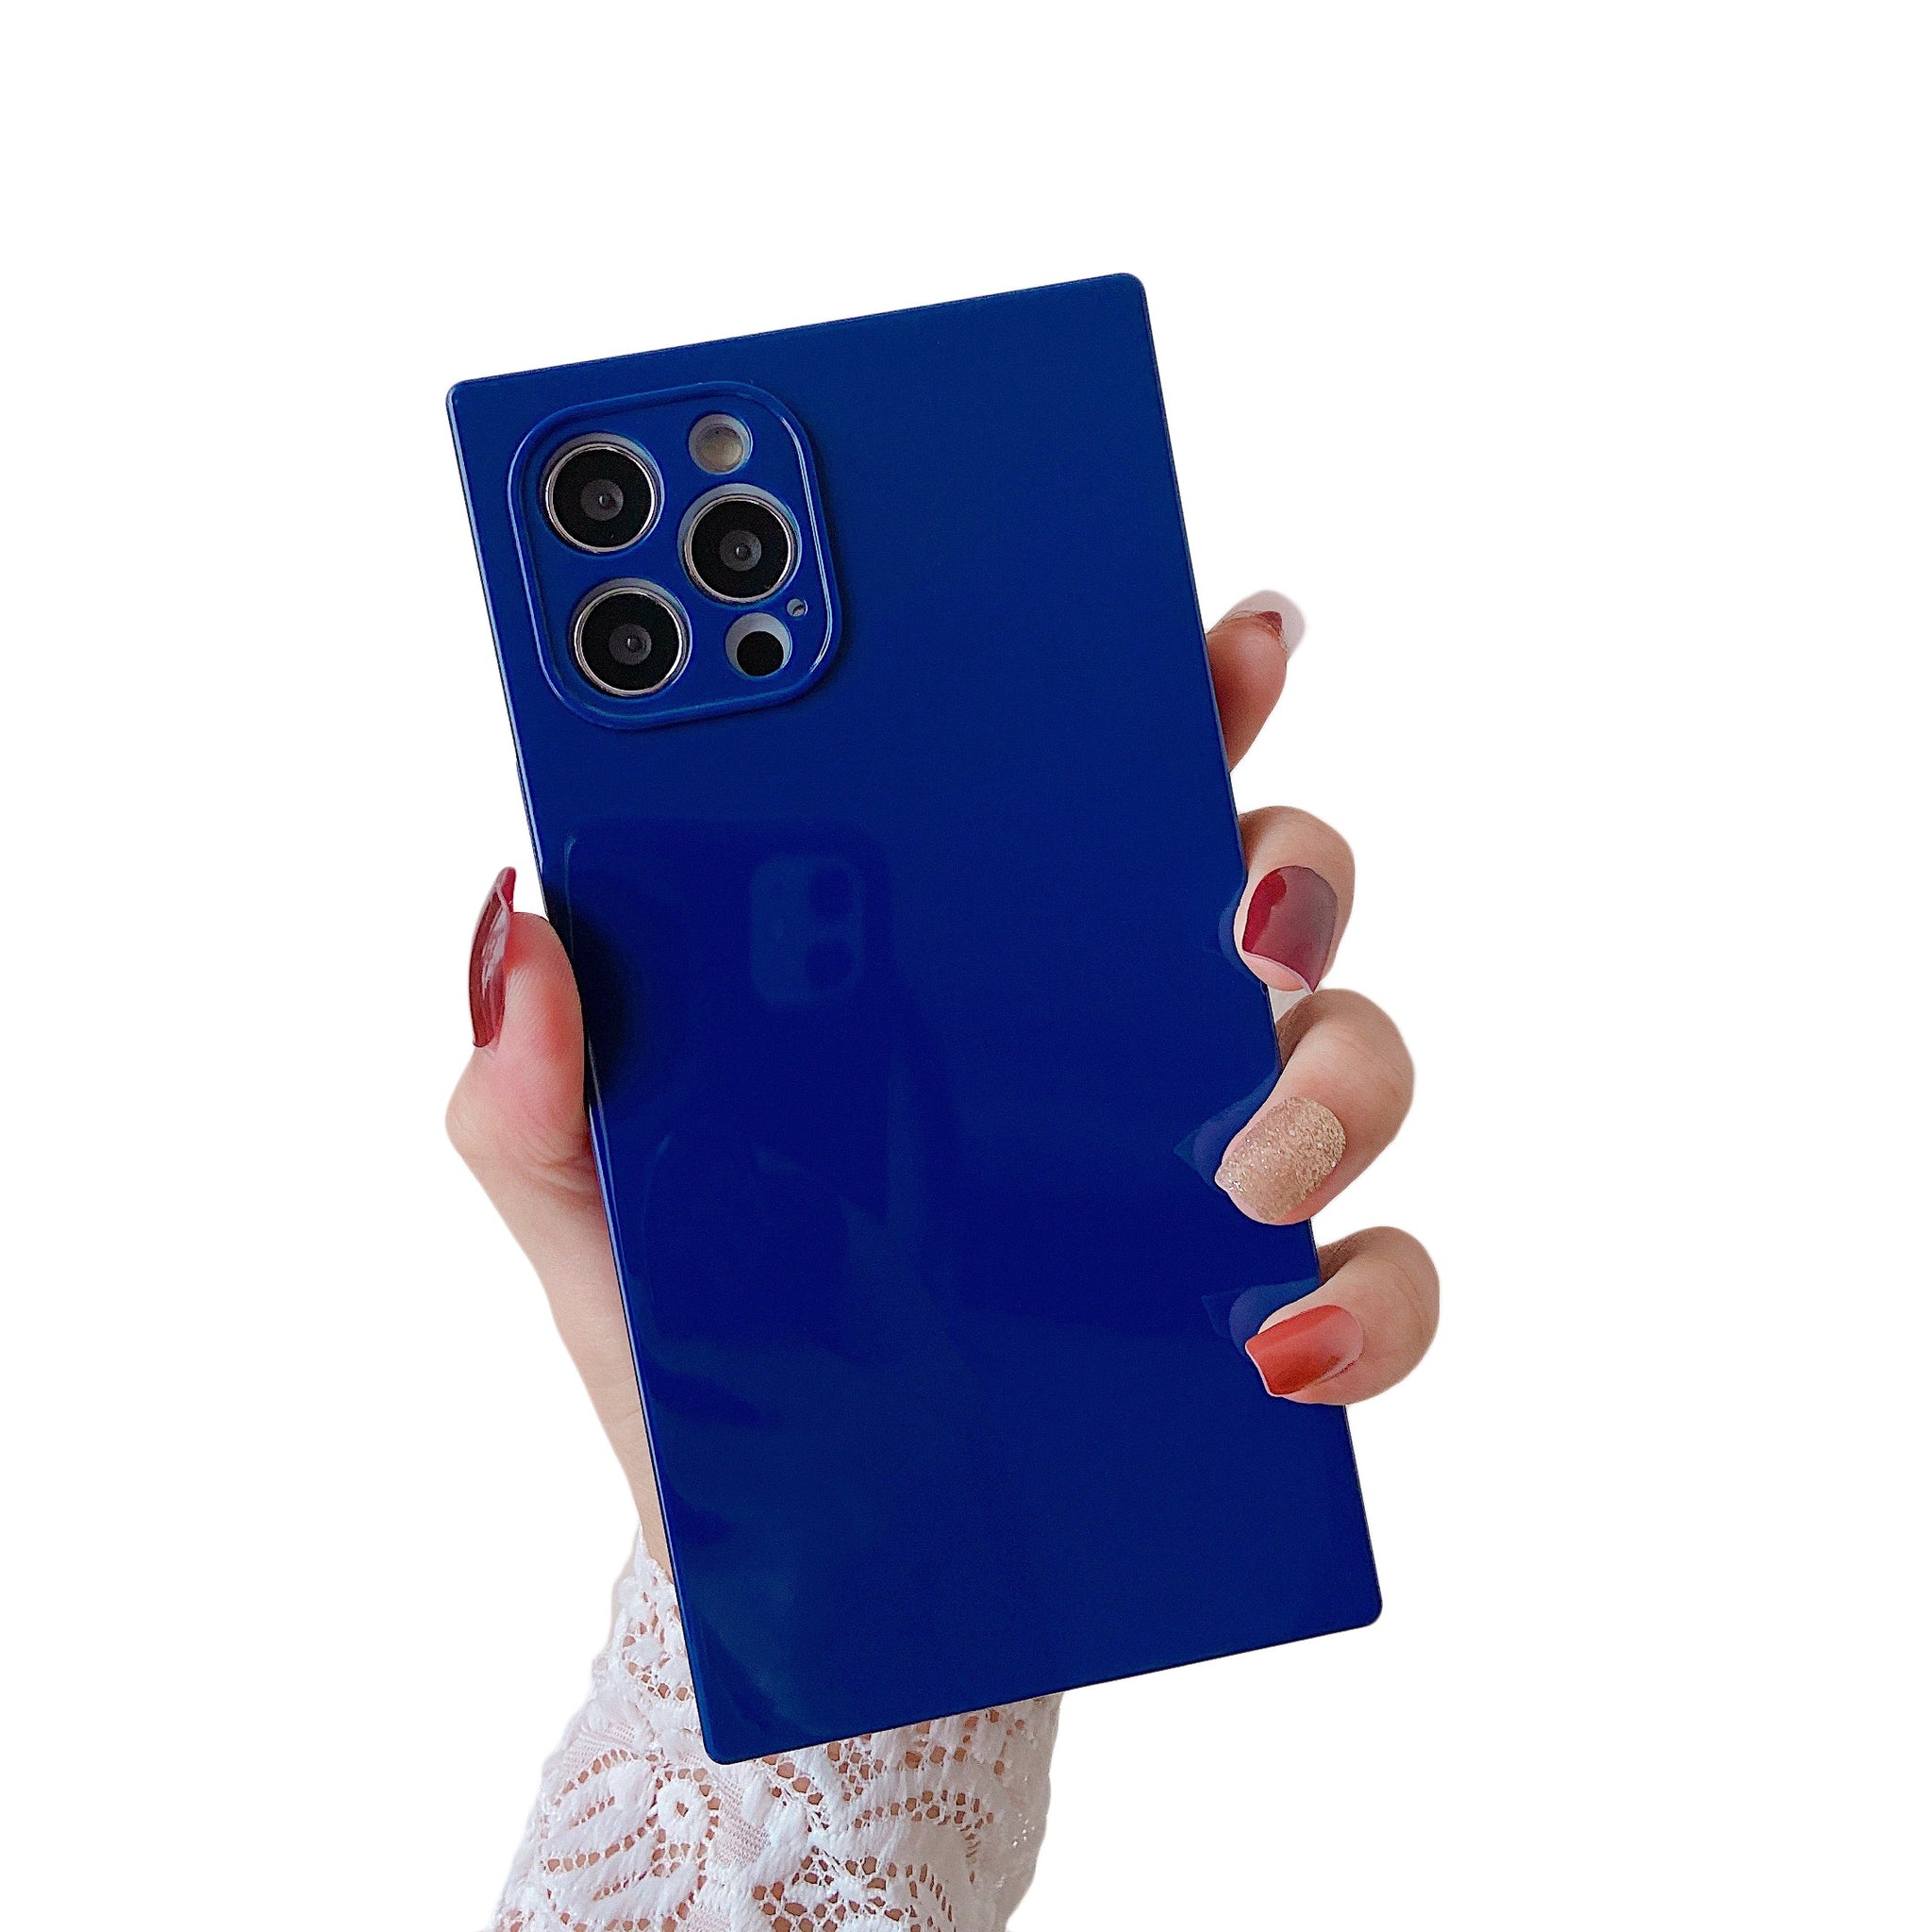 iPhone 11 Pro Max Case Square Plain Color (Blue)